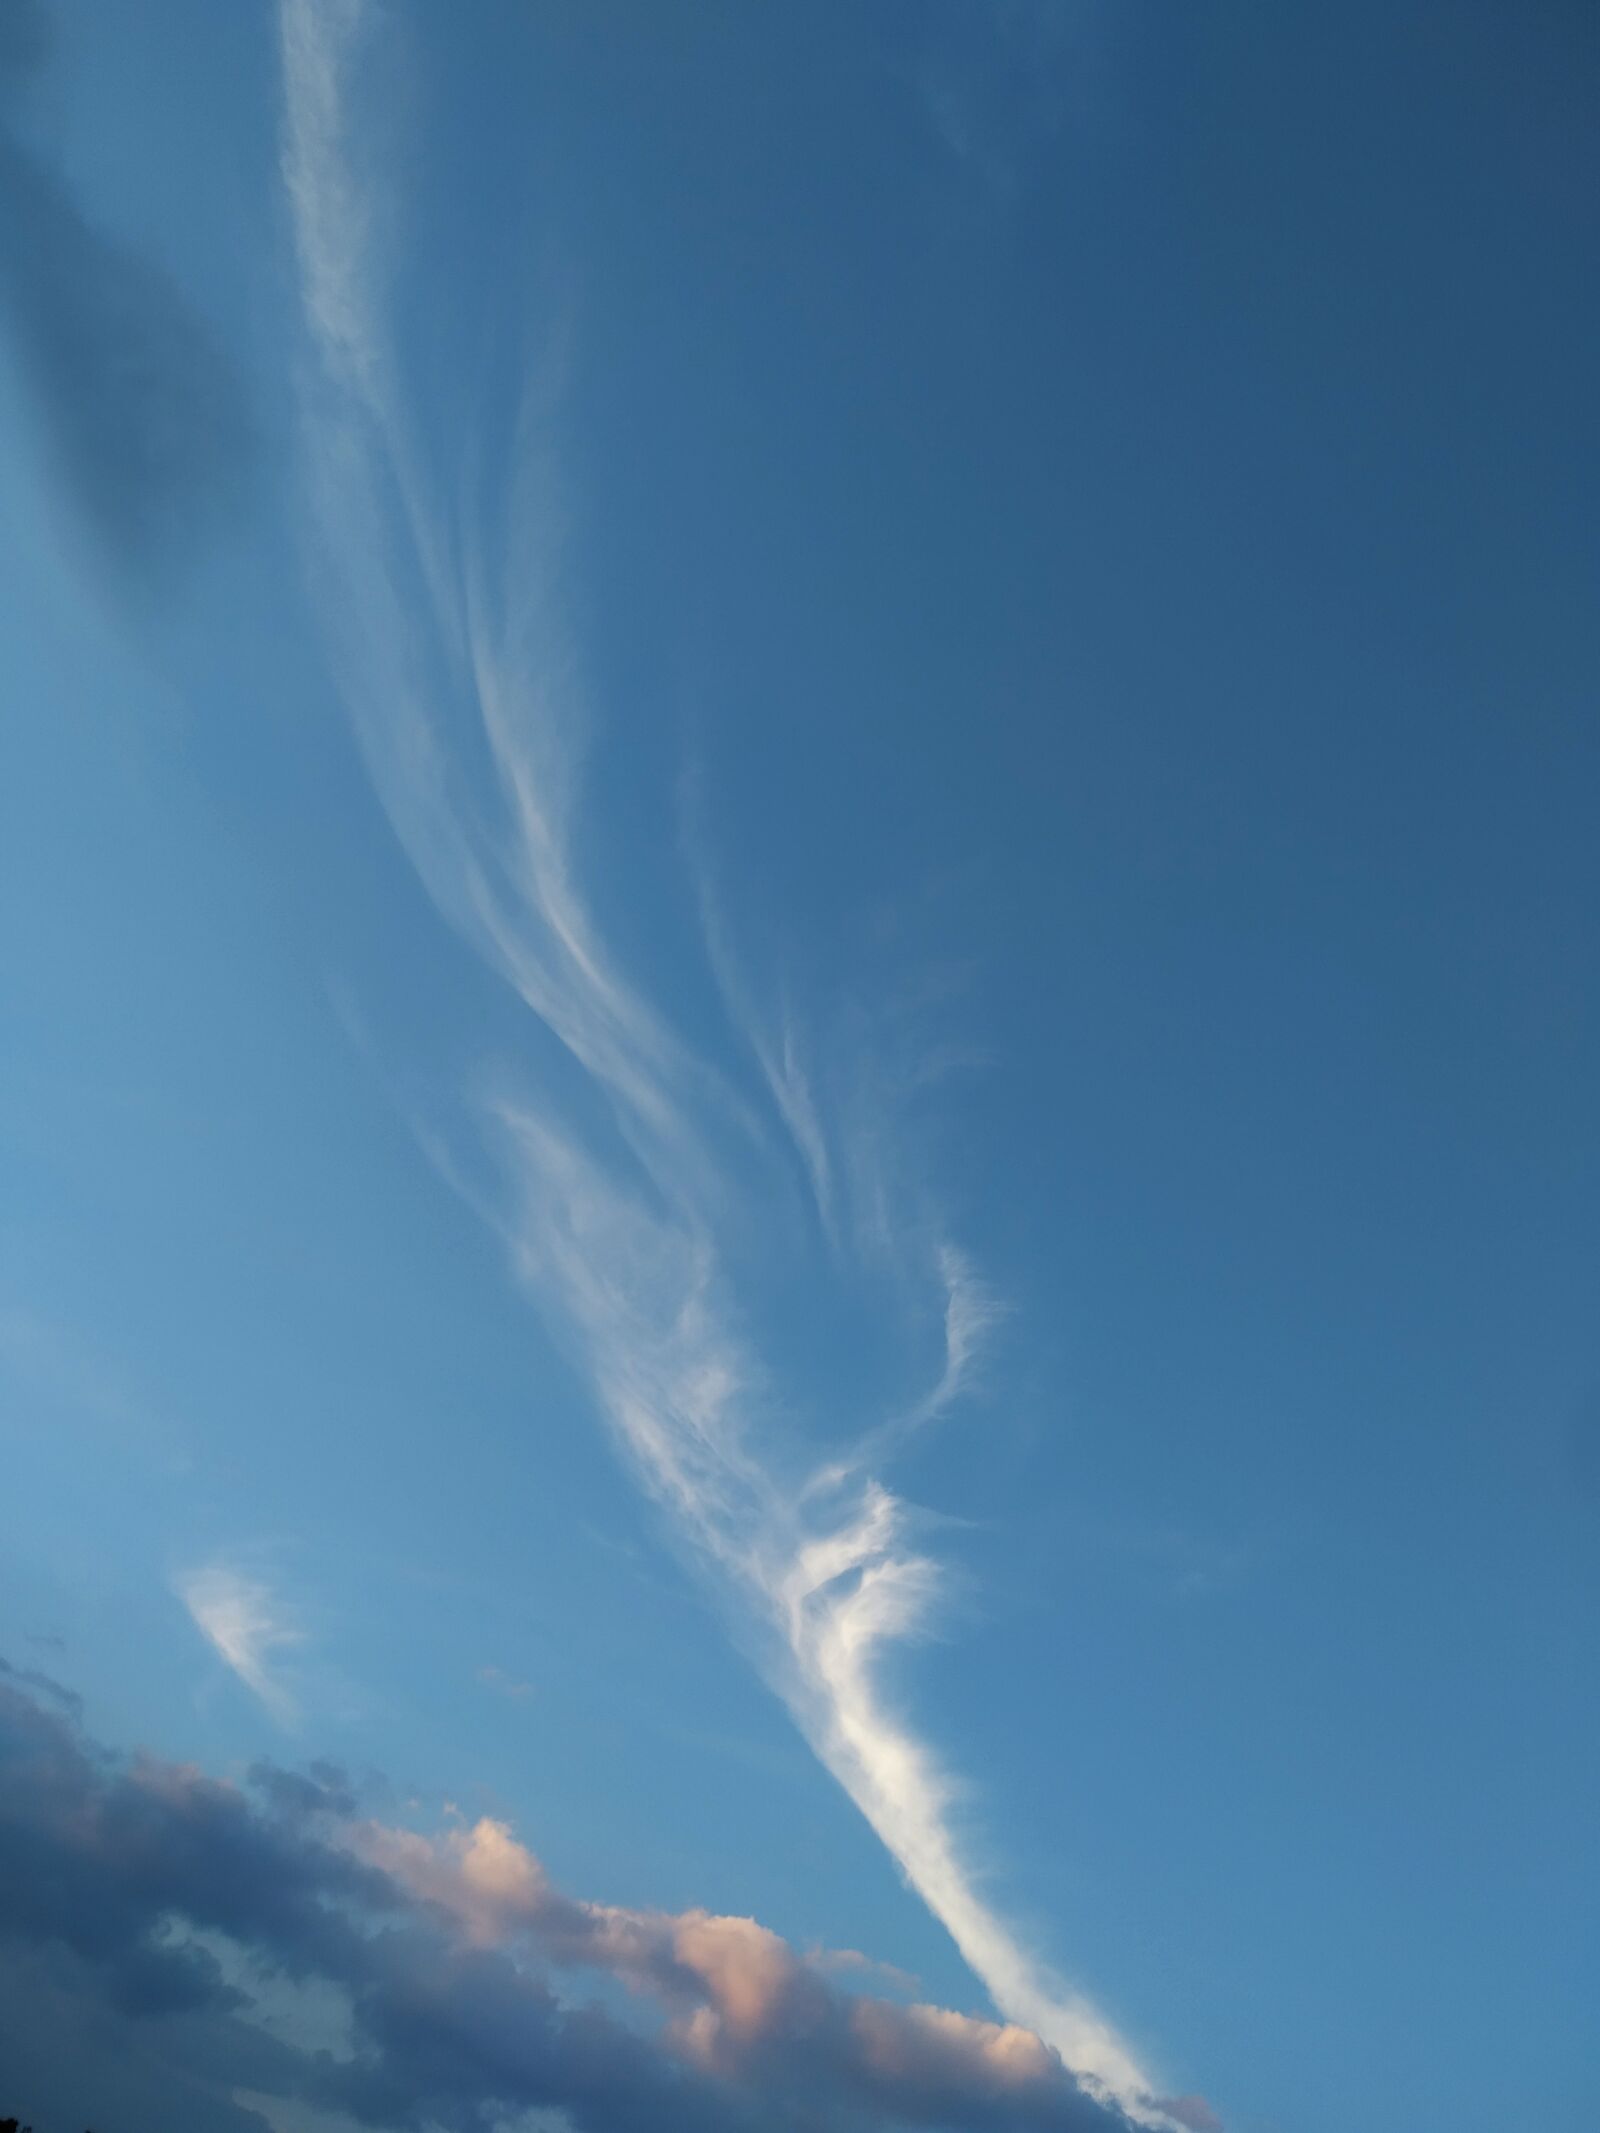 Xiaomi Redmi 7 sample photo. Cloud, panorama, nature photography